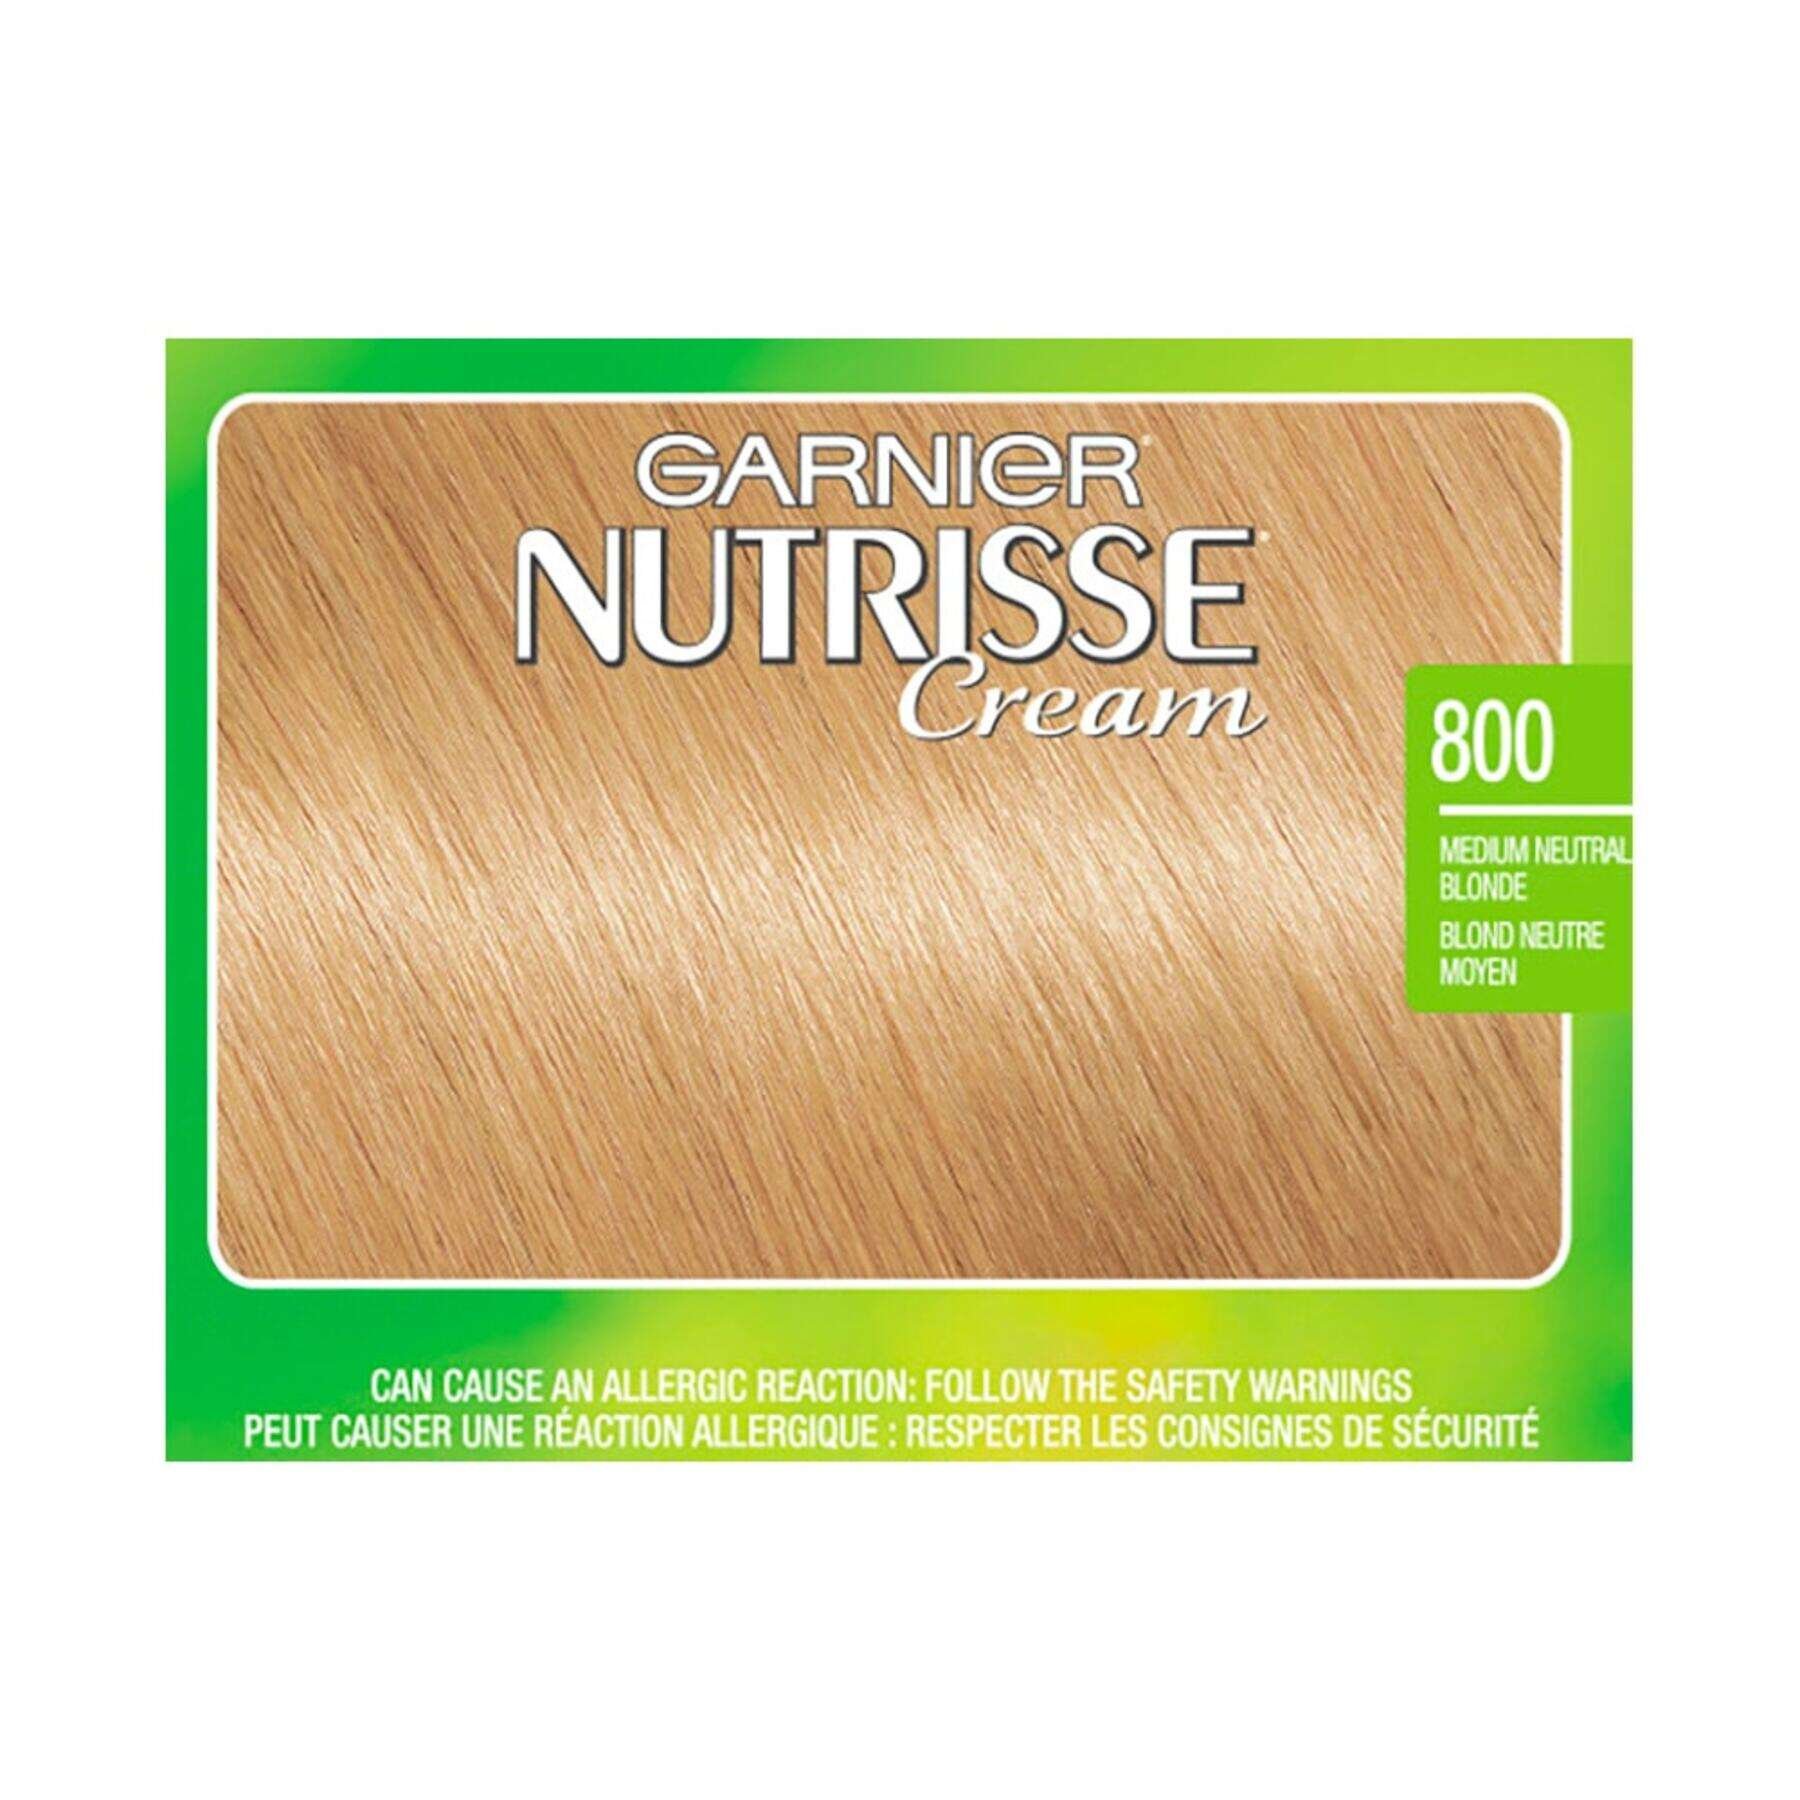 garnier hair dye nutrisse cream 800 medium neutral blonde 0603084454761 swatch